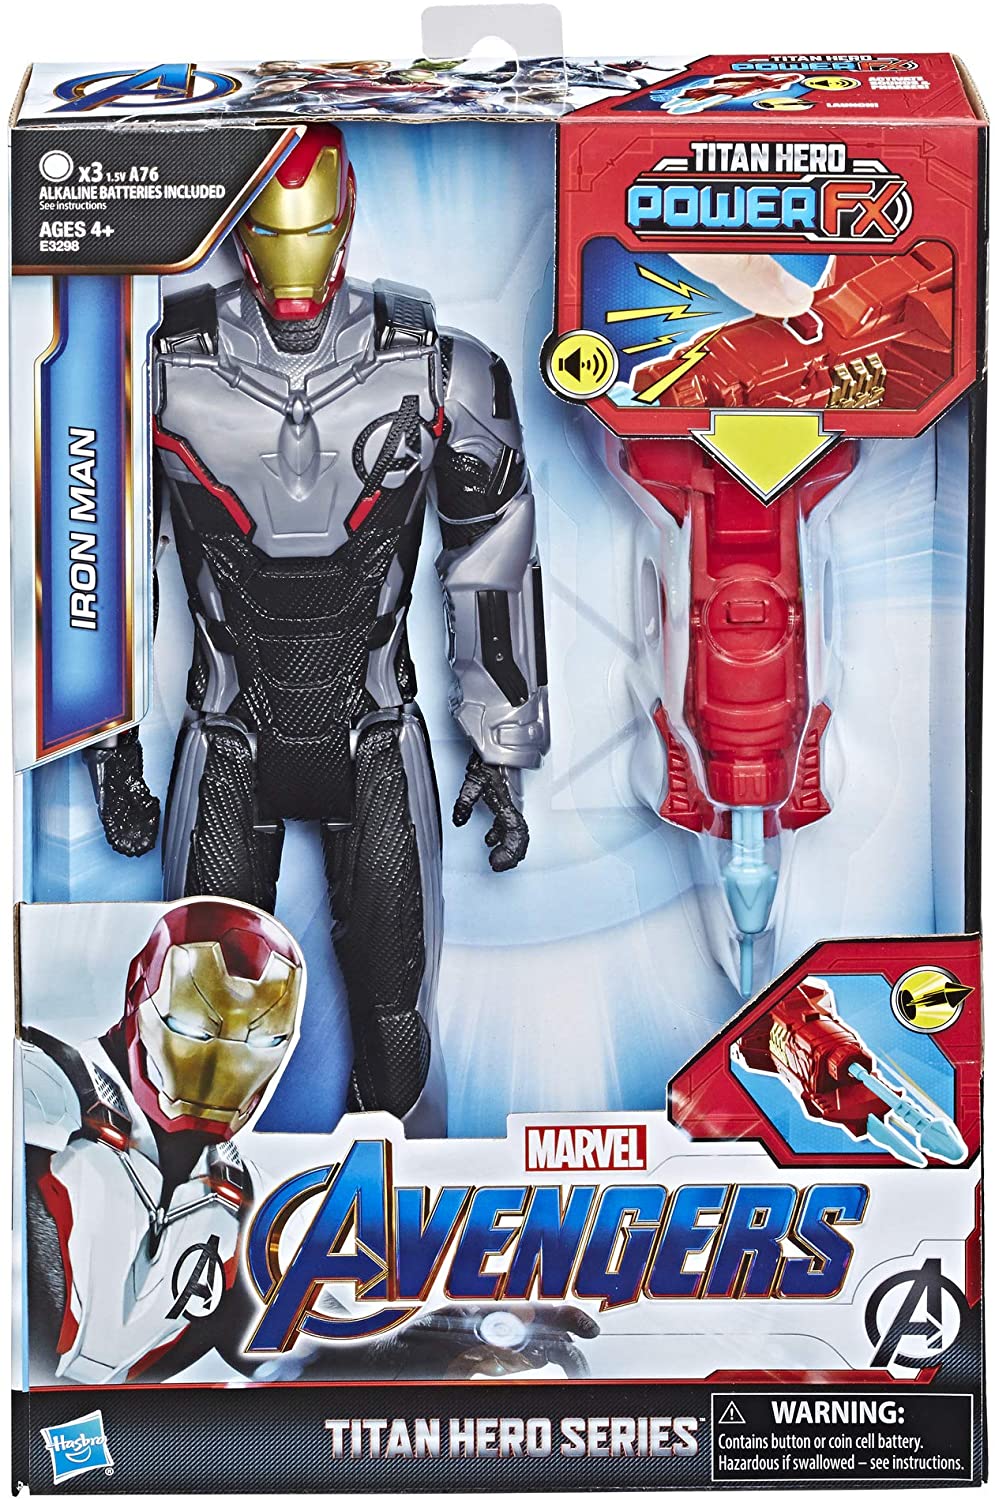 Vengadores TH Power FX 2.0 Iron Man